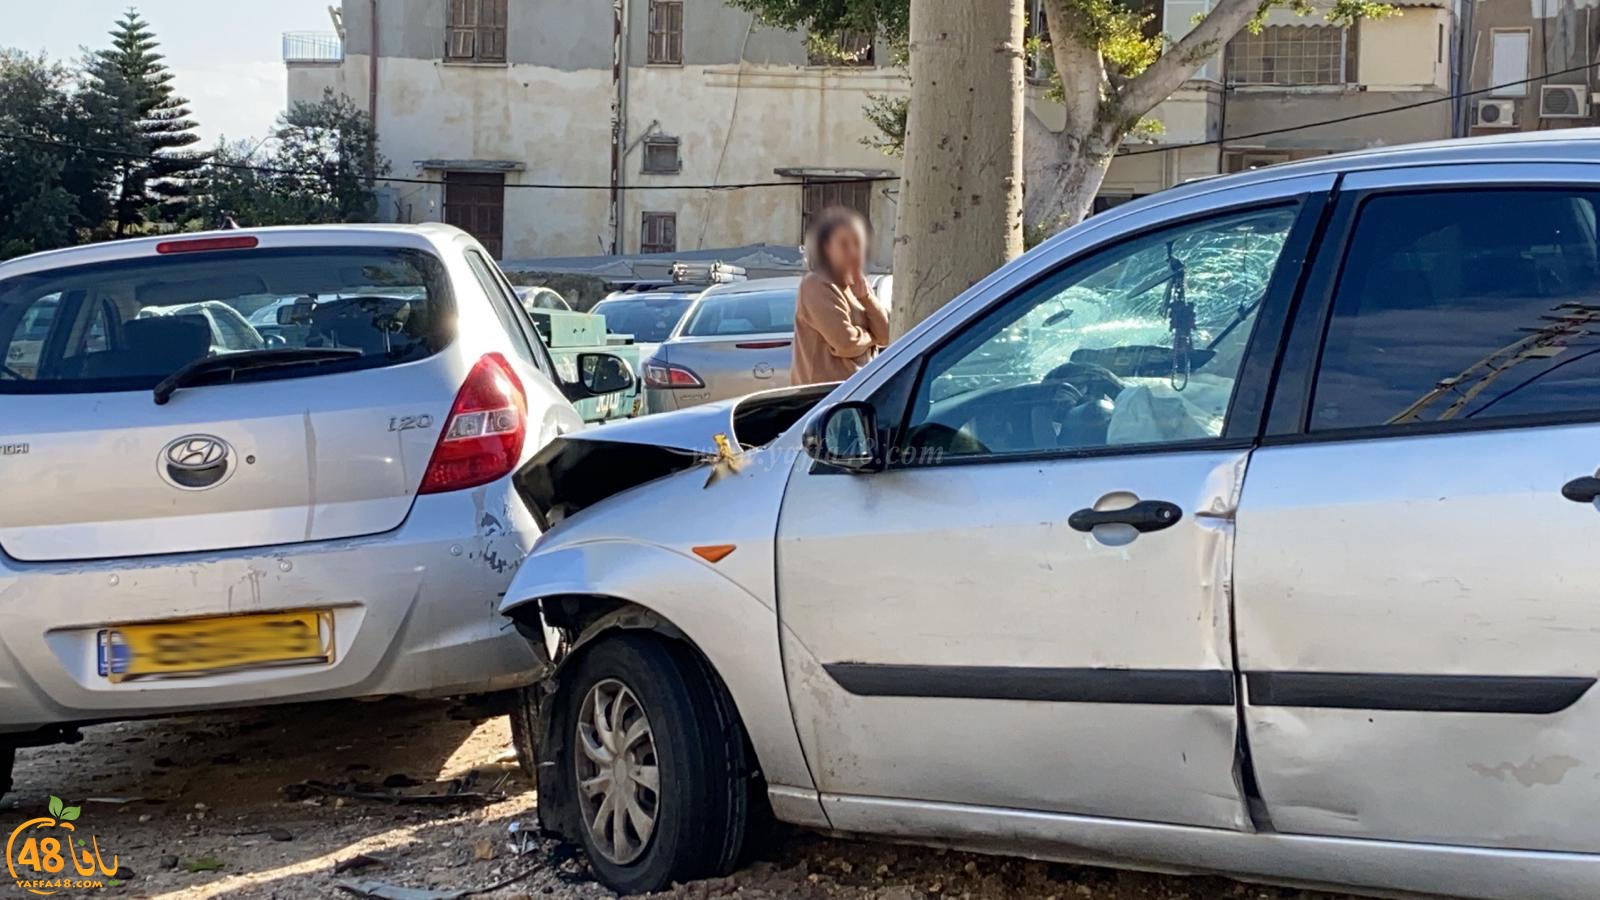   حادث طرق بين مركبتين في يافا دون اصابات